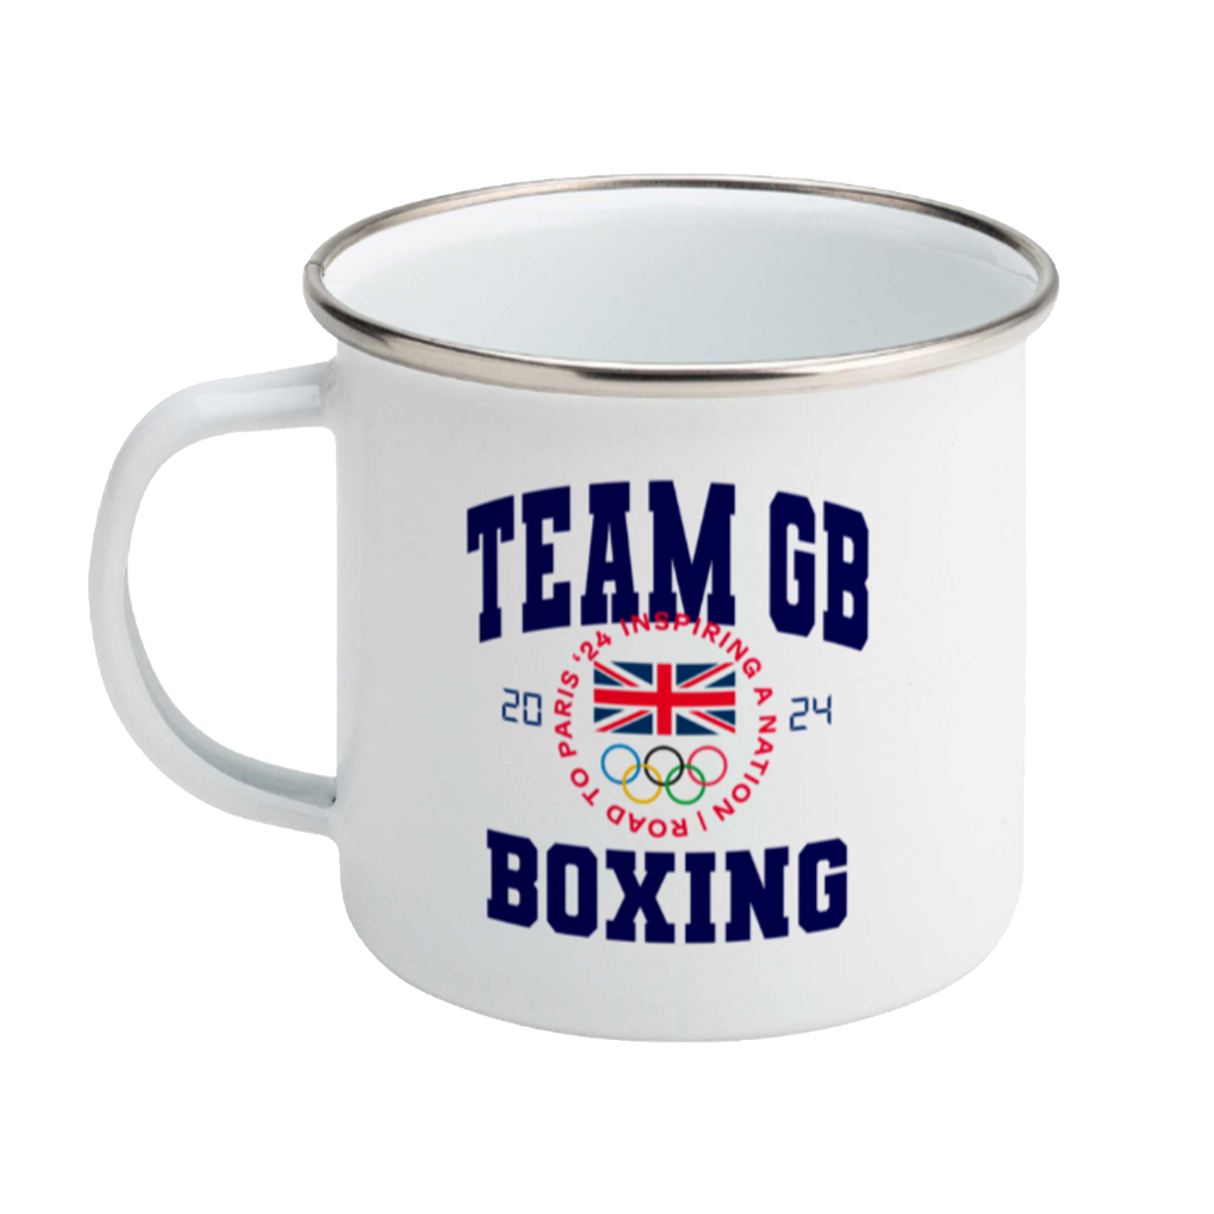 Team GB Boxing Enamel Mug White